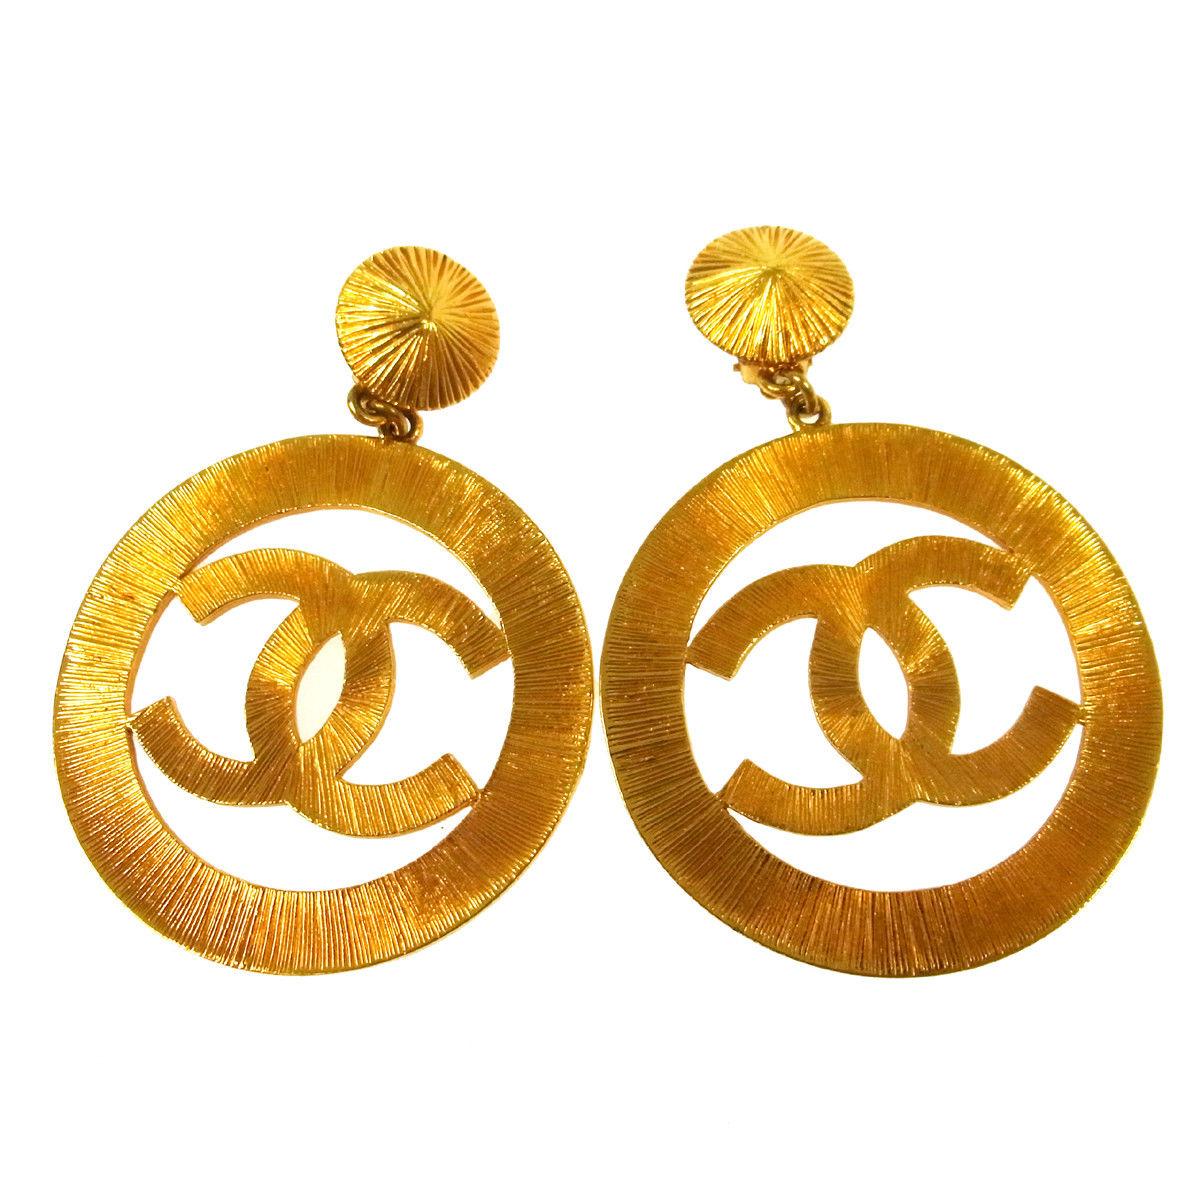 Iconic 24K Gold Chanel 1980s Jumbo Interlocking 'C' Hoop Earrings